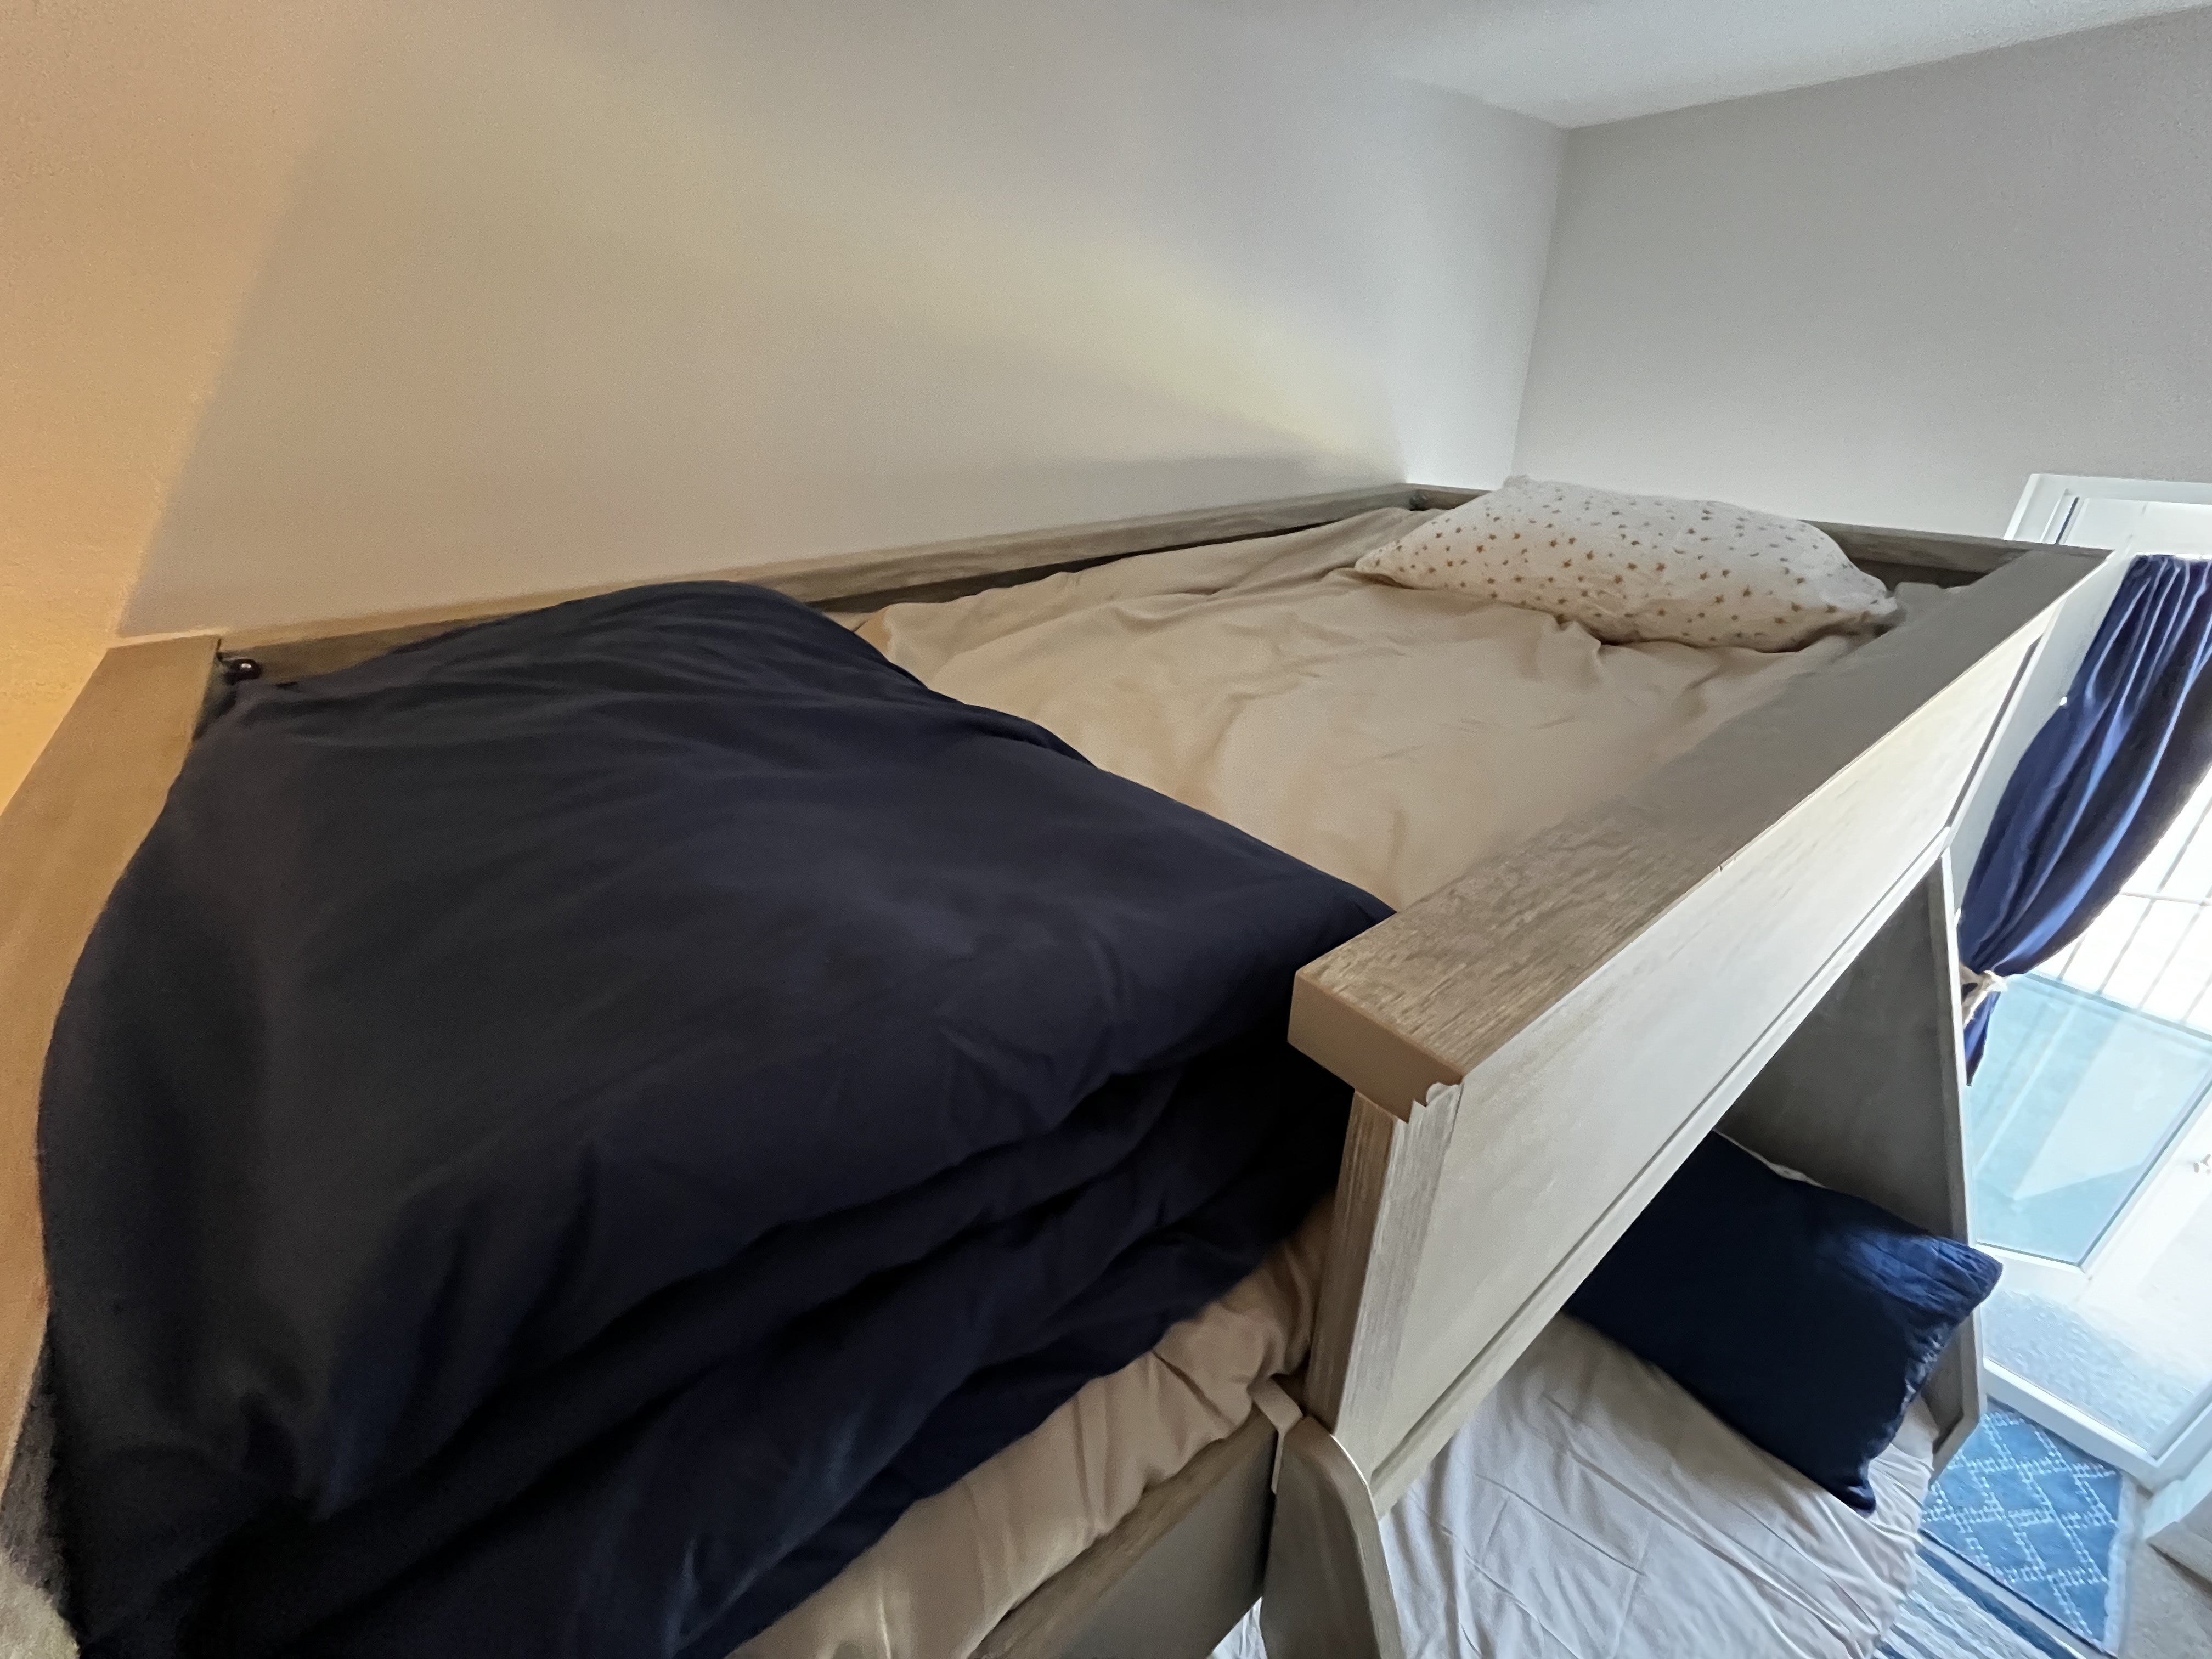 Third Bedroom Upper bunk